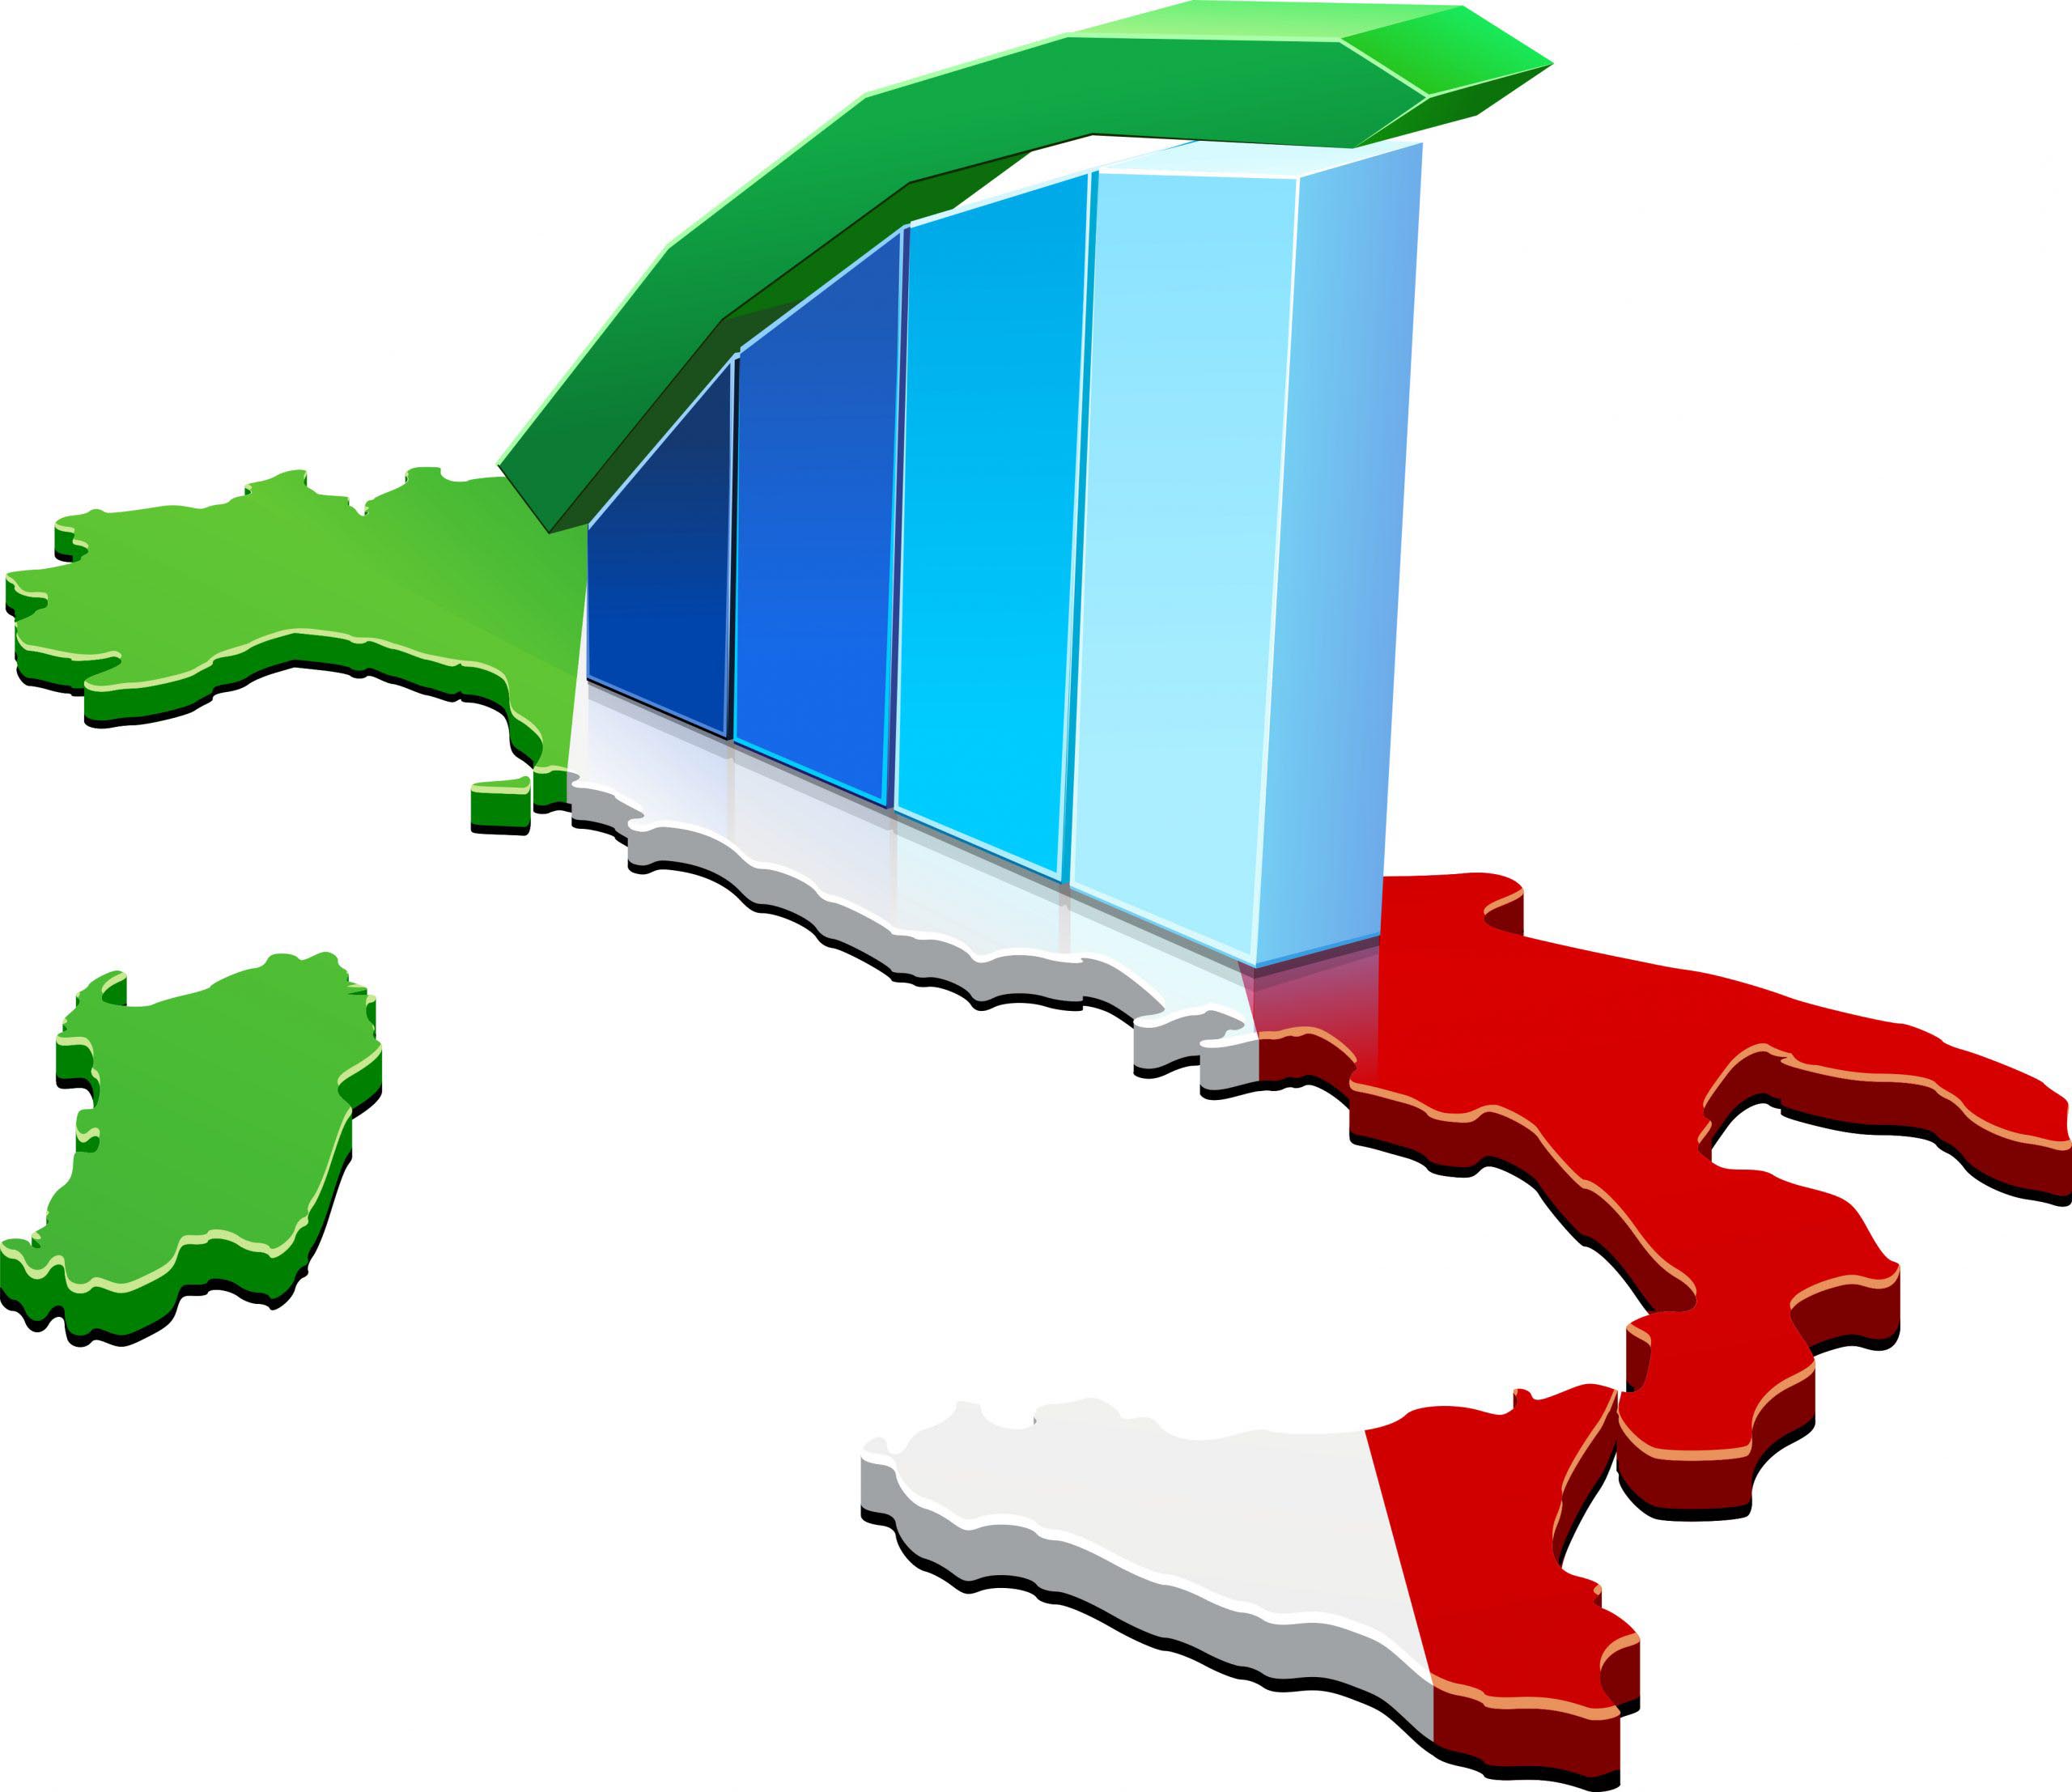 Crecimiento económico: Italia corre (por una vez) más que el resto de Europa